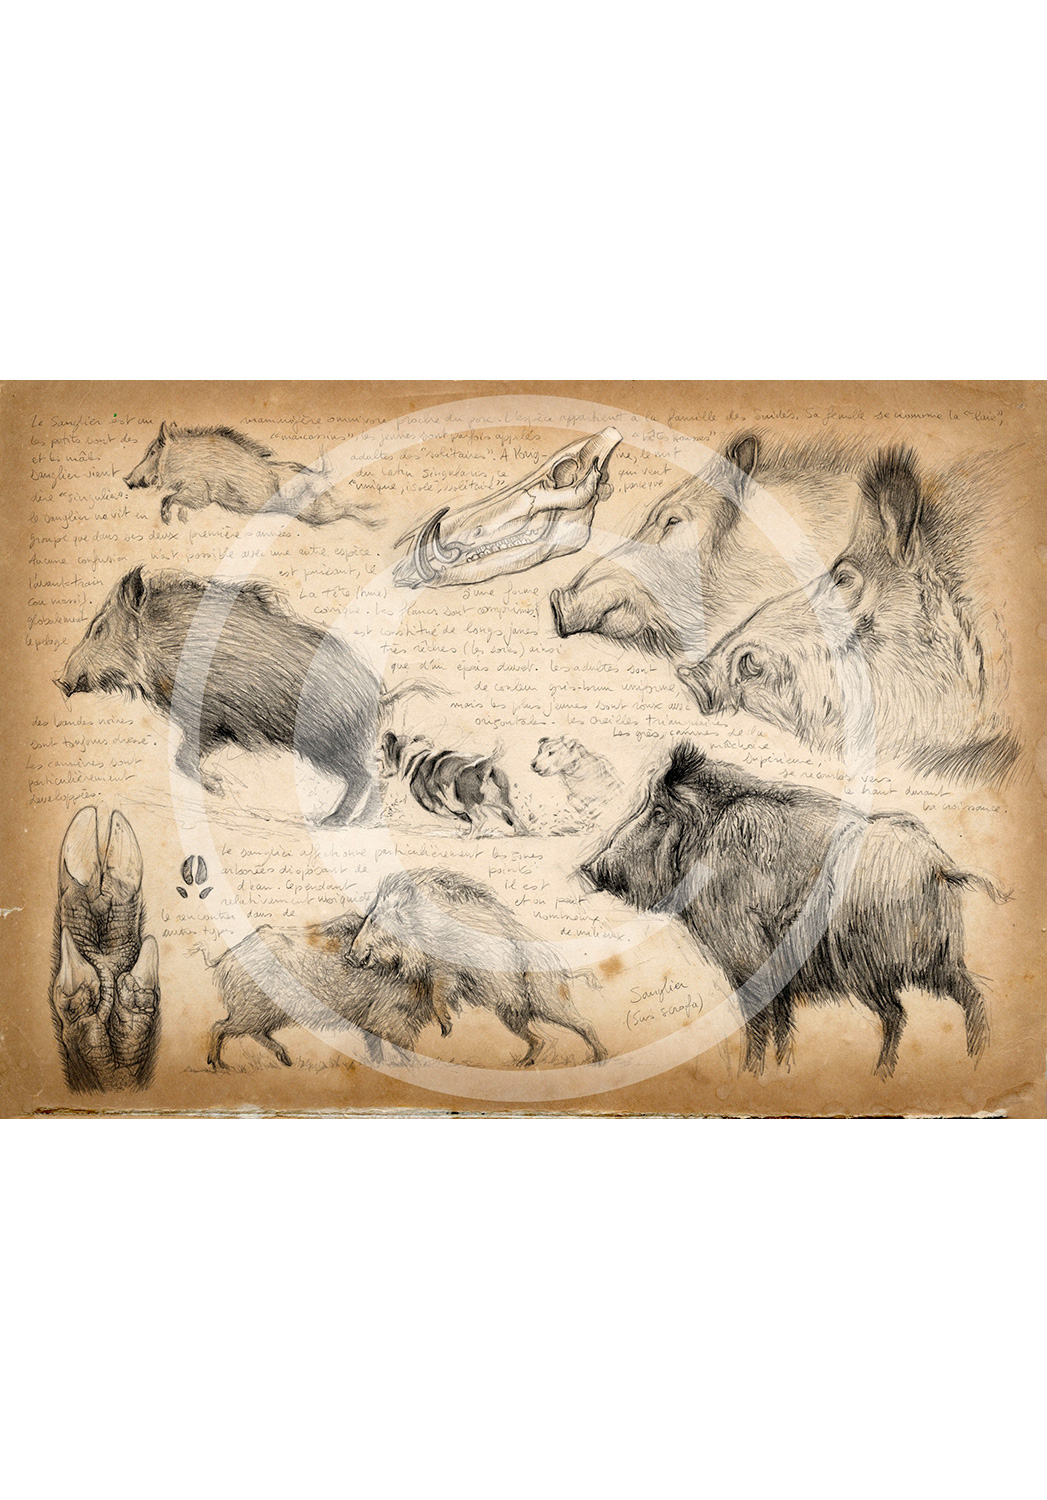 Marcello-art: Fauna temperate zone 58 - Boar